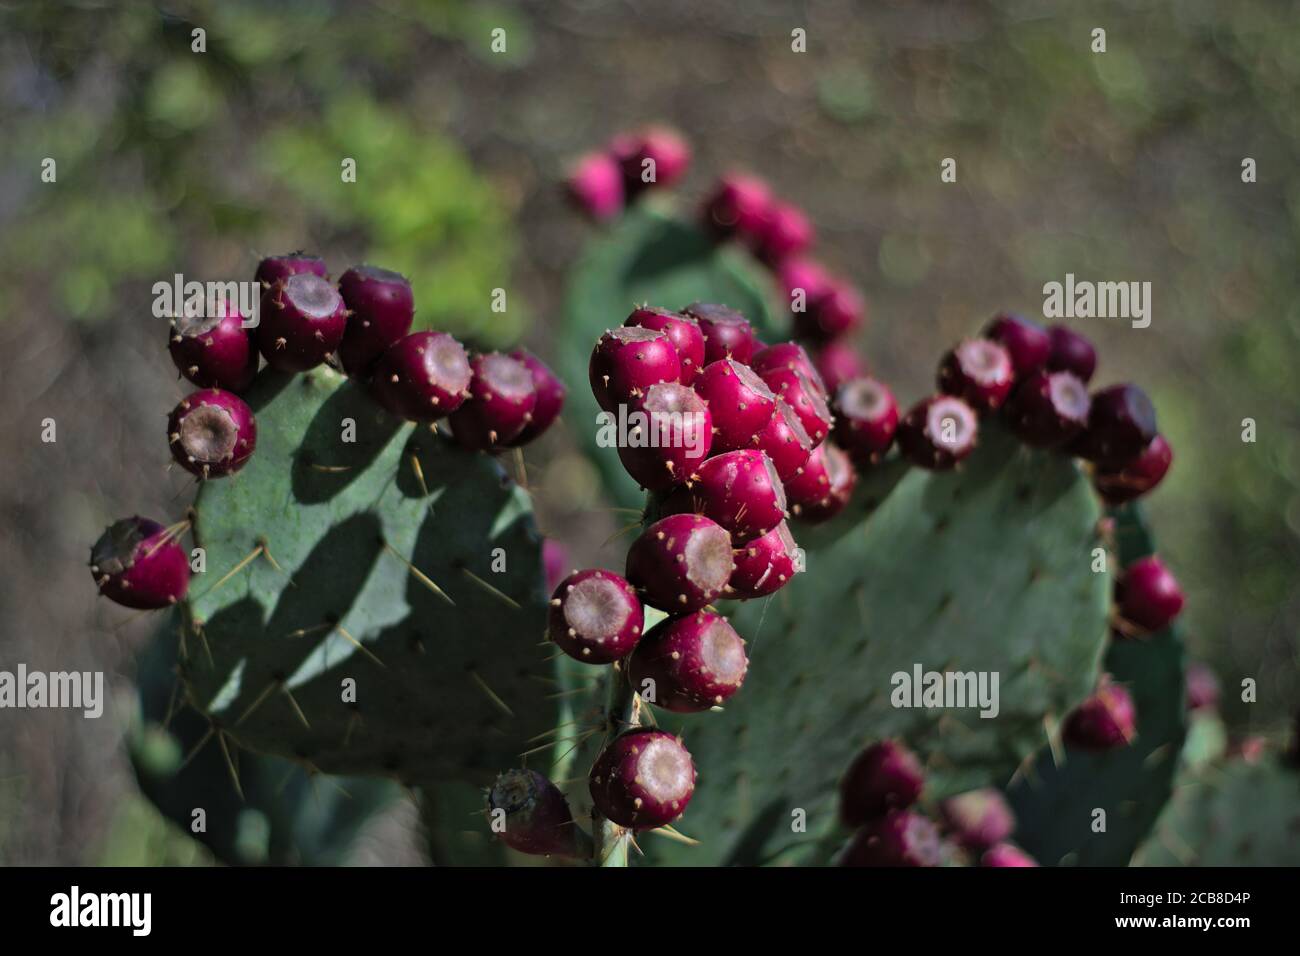 Cactus de poire à baies en gros plan de fruits violets avec arrière-plan hors foyer au premier plan dans le désert du Texas. Banque D'Images